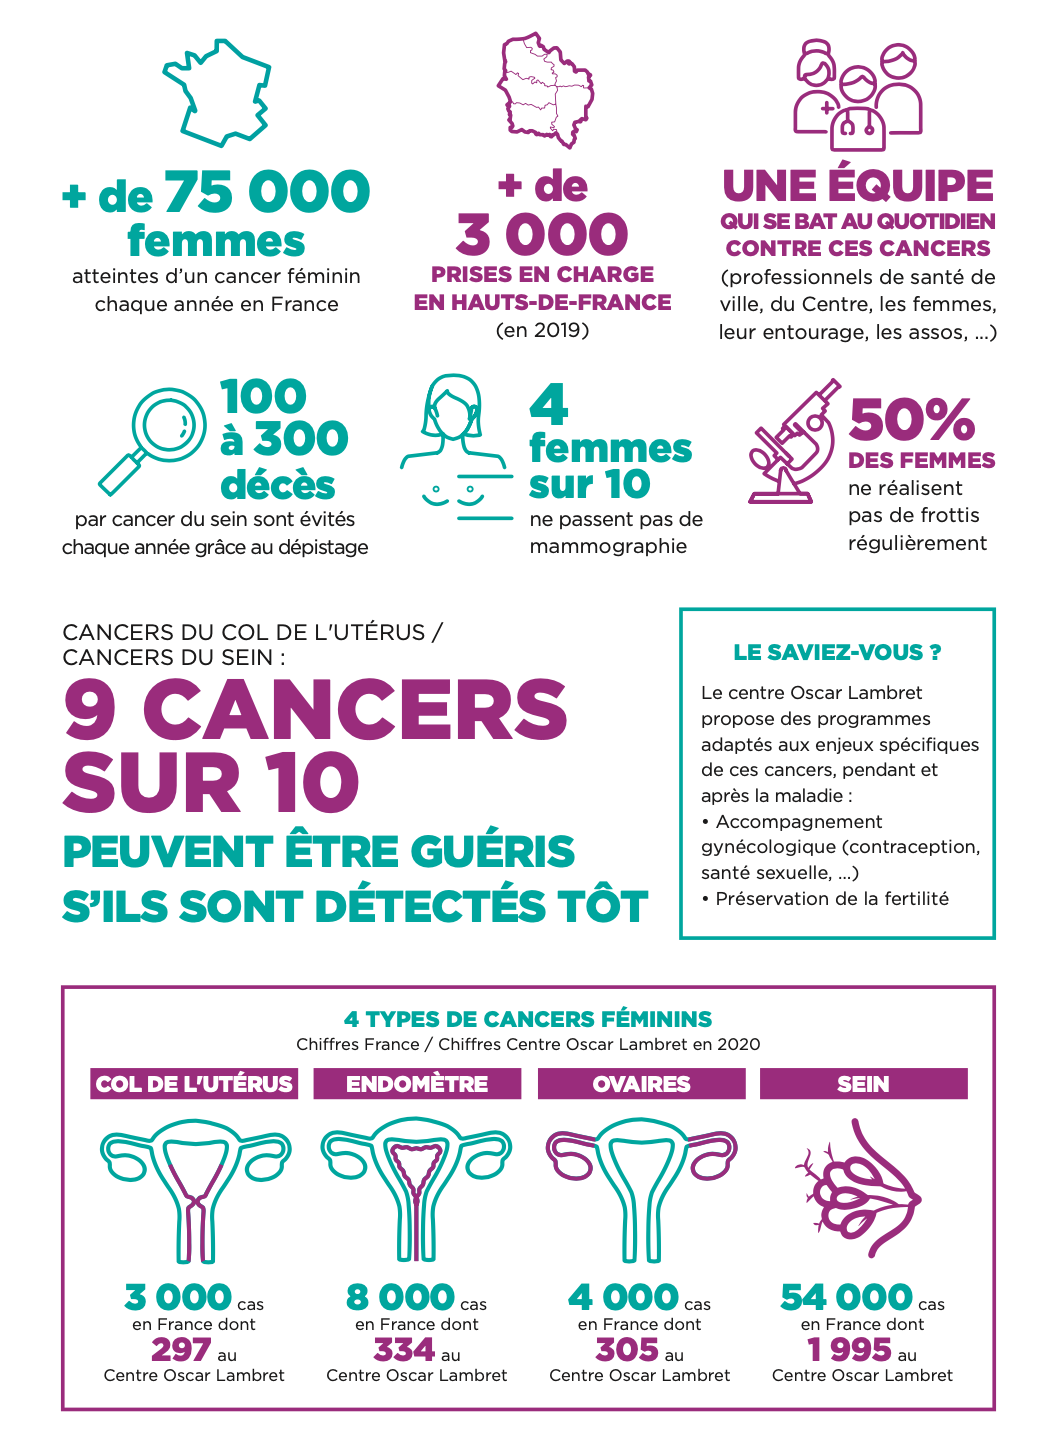 Infographie préventive sur les cancers féminins selon le centre Oscar Lambret, à Lille